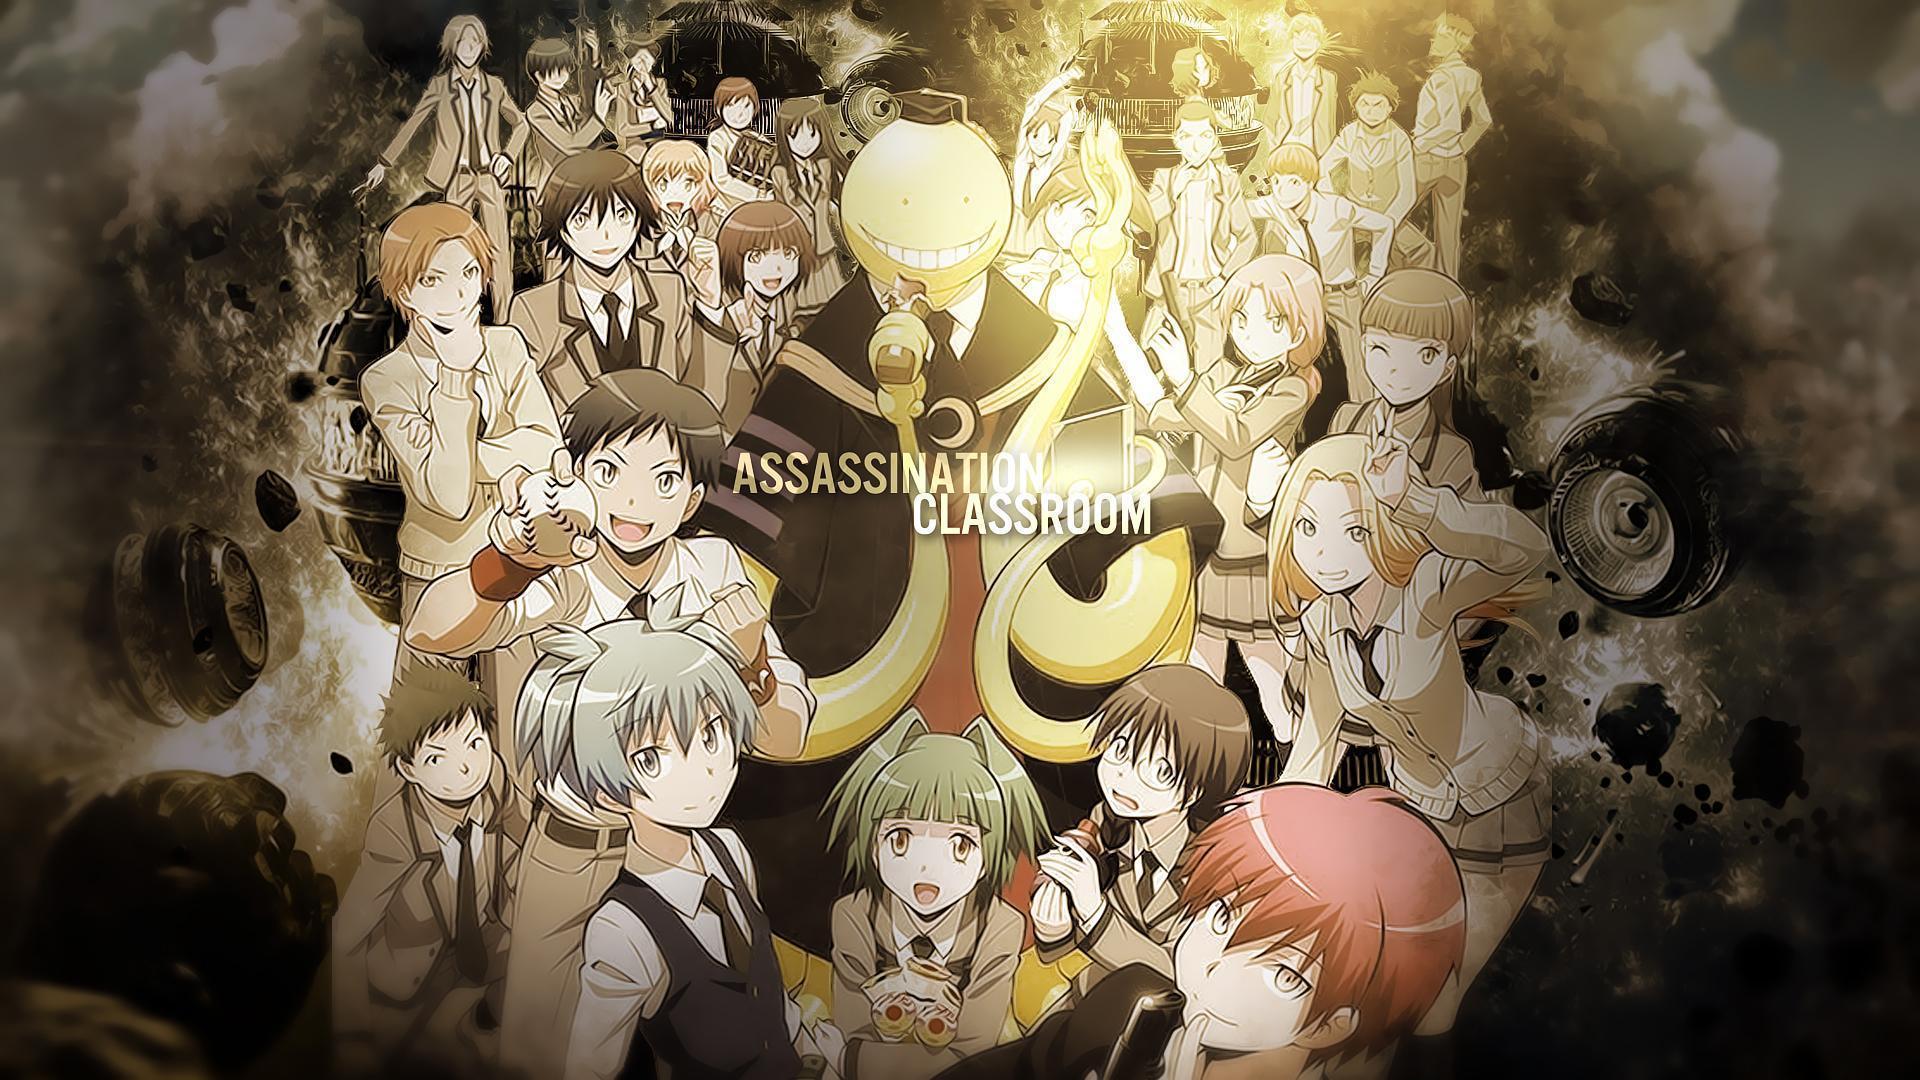 Assassination Classroom Desktop Wallpaper 4k Ultra Hd, Assassination Classroom, Anime